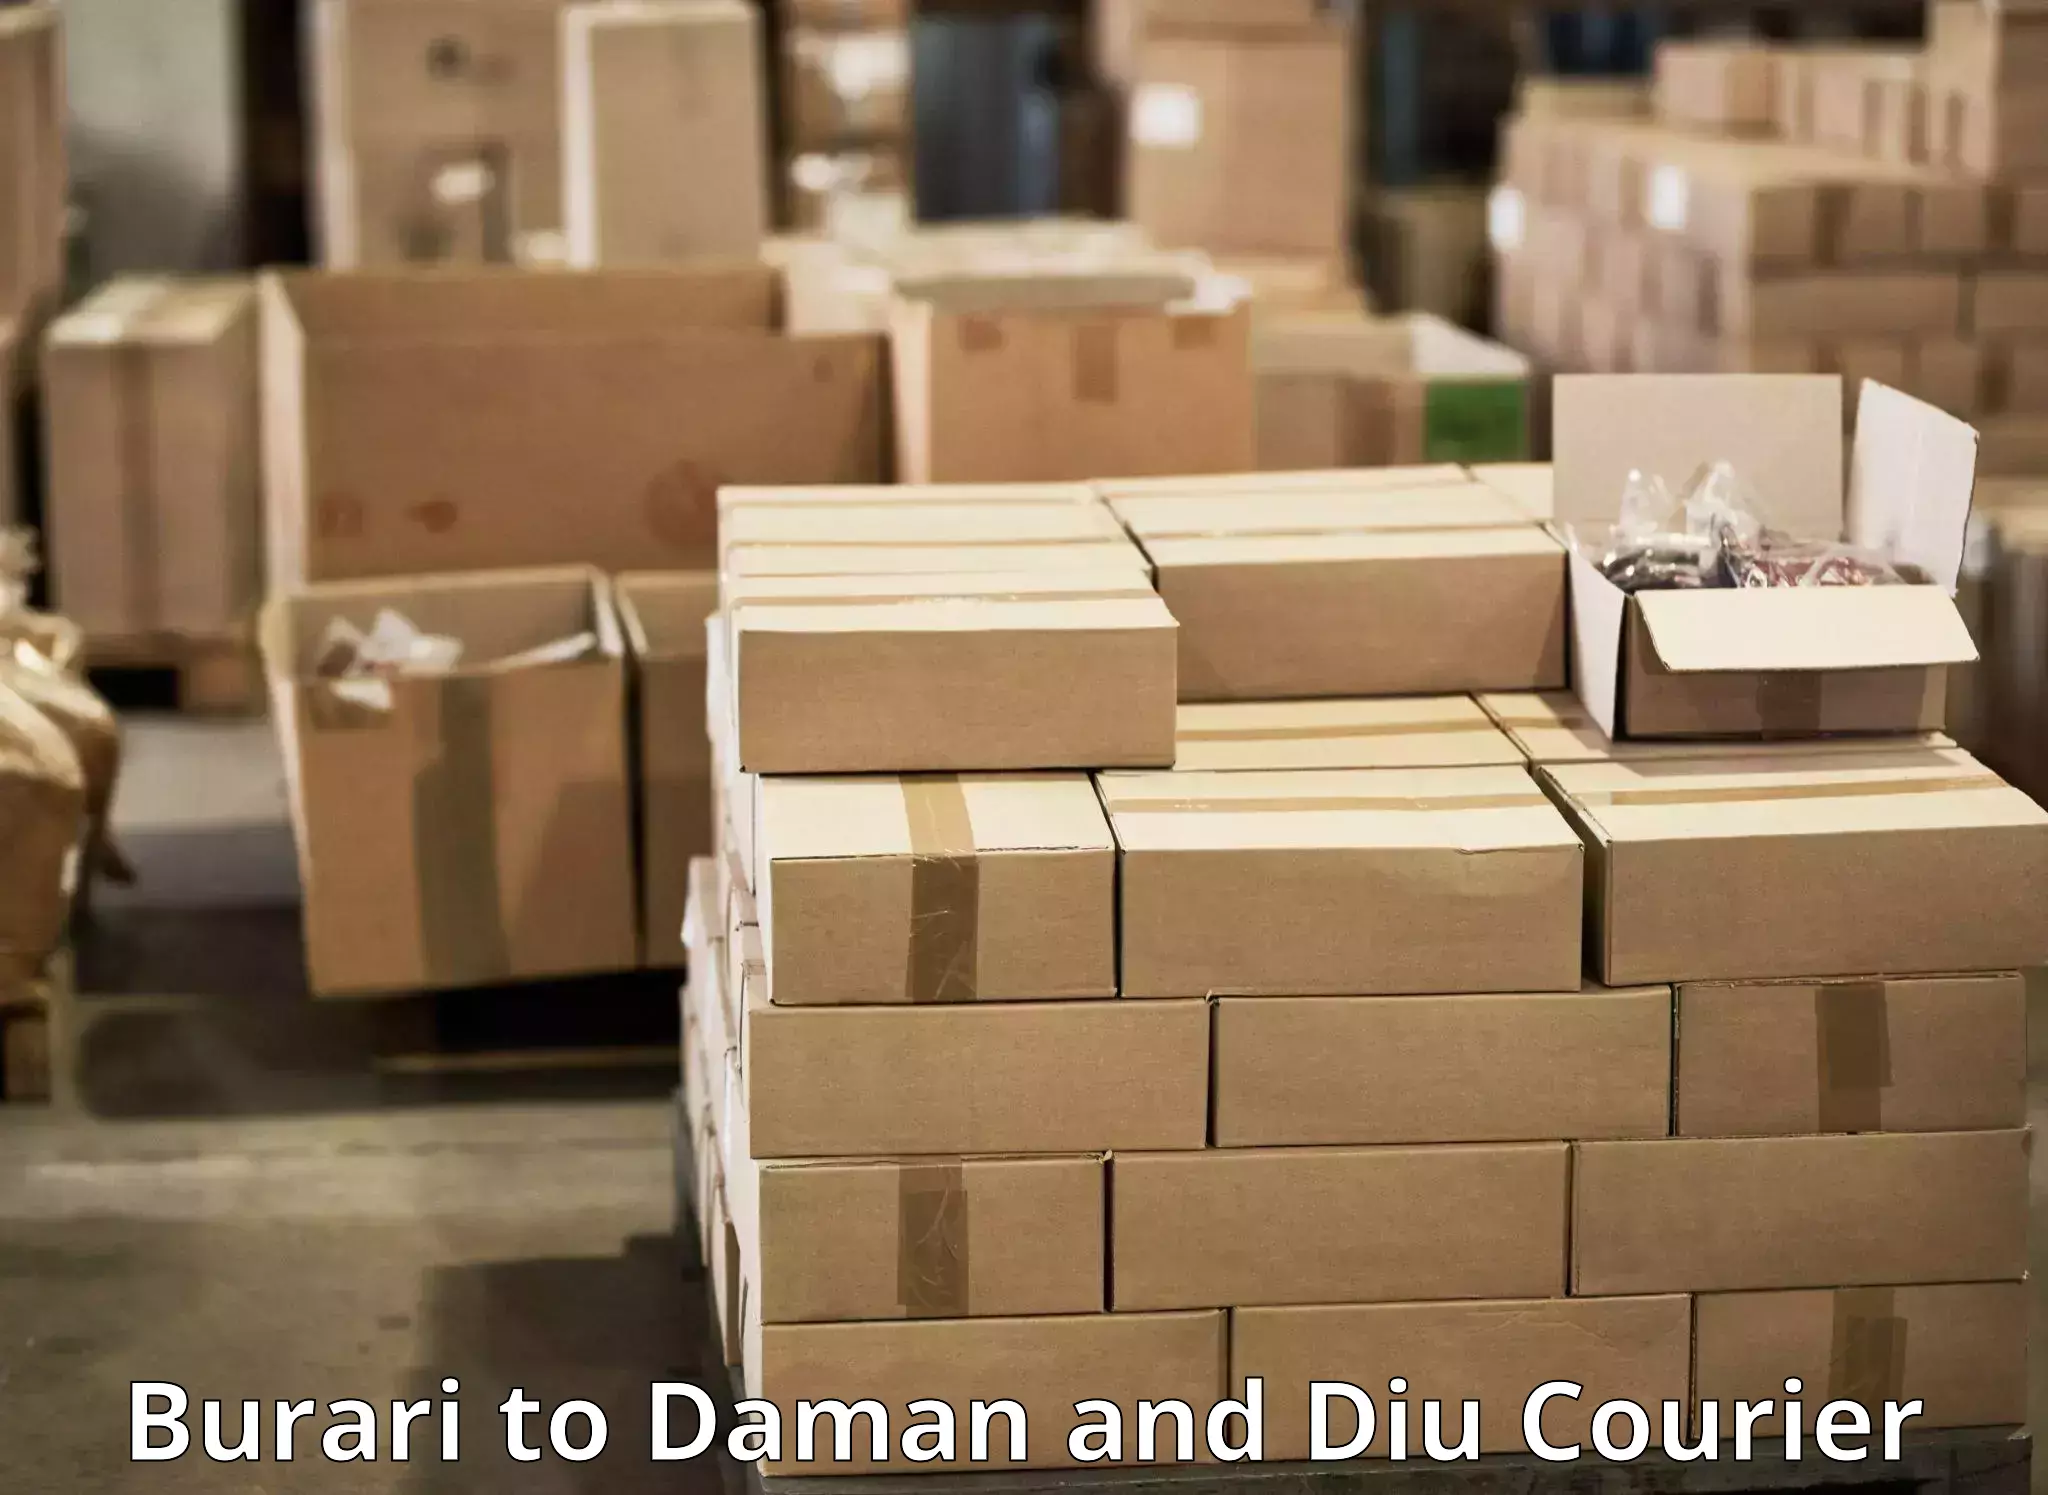 Efficient order fulfillment Burari to Daman and Diu